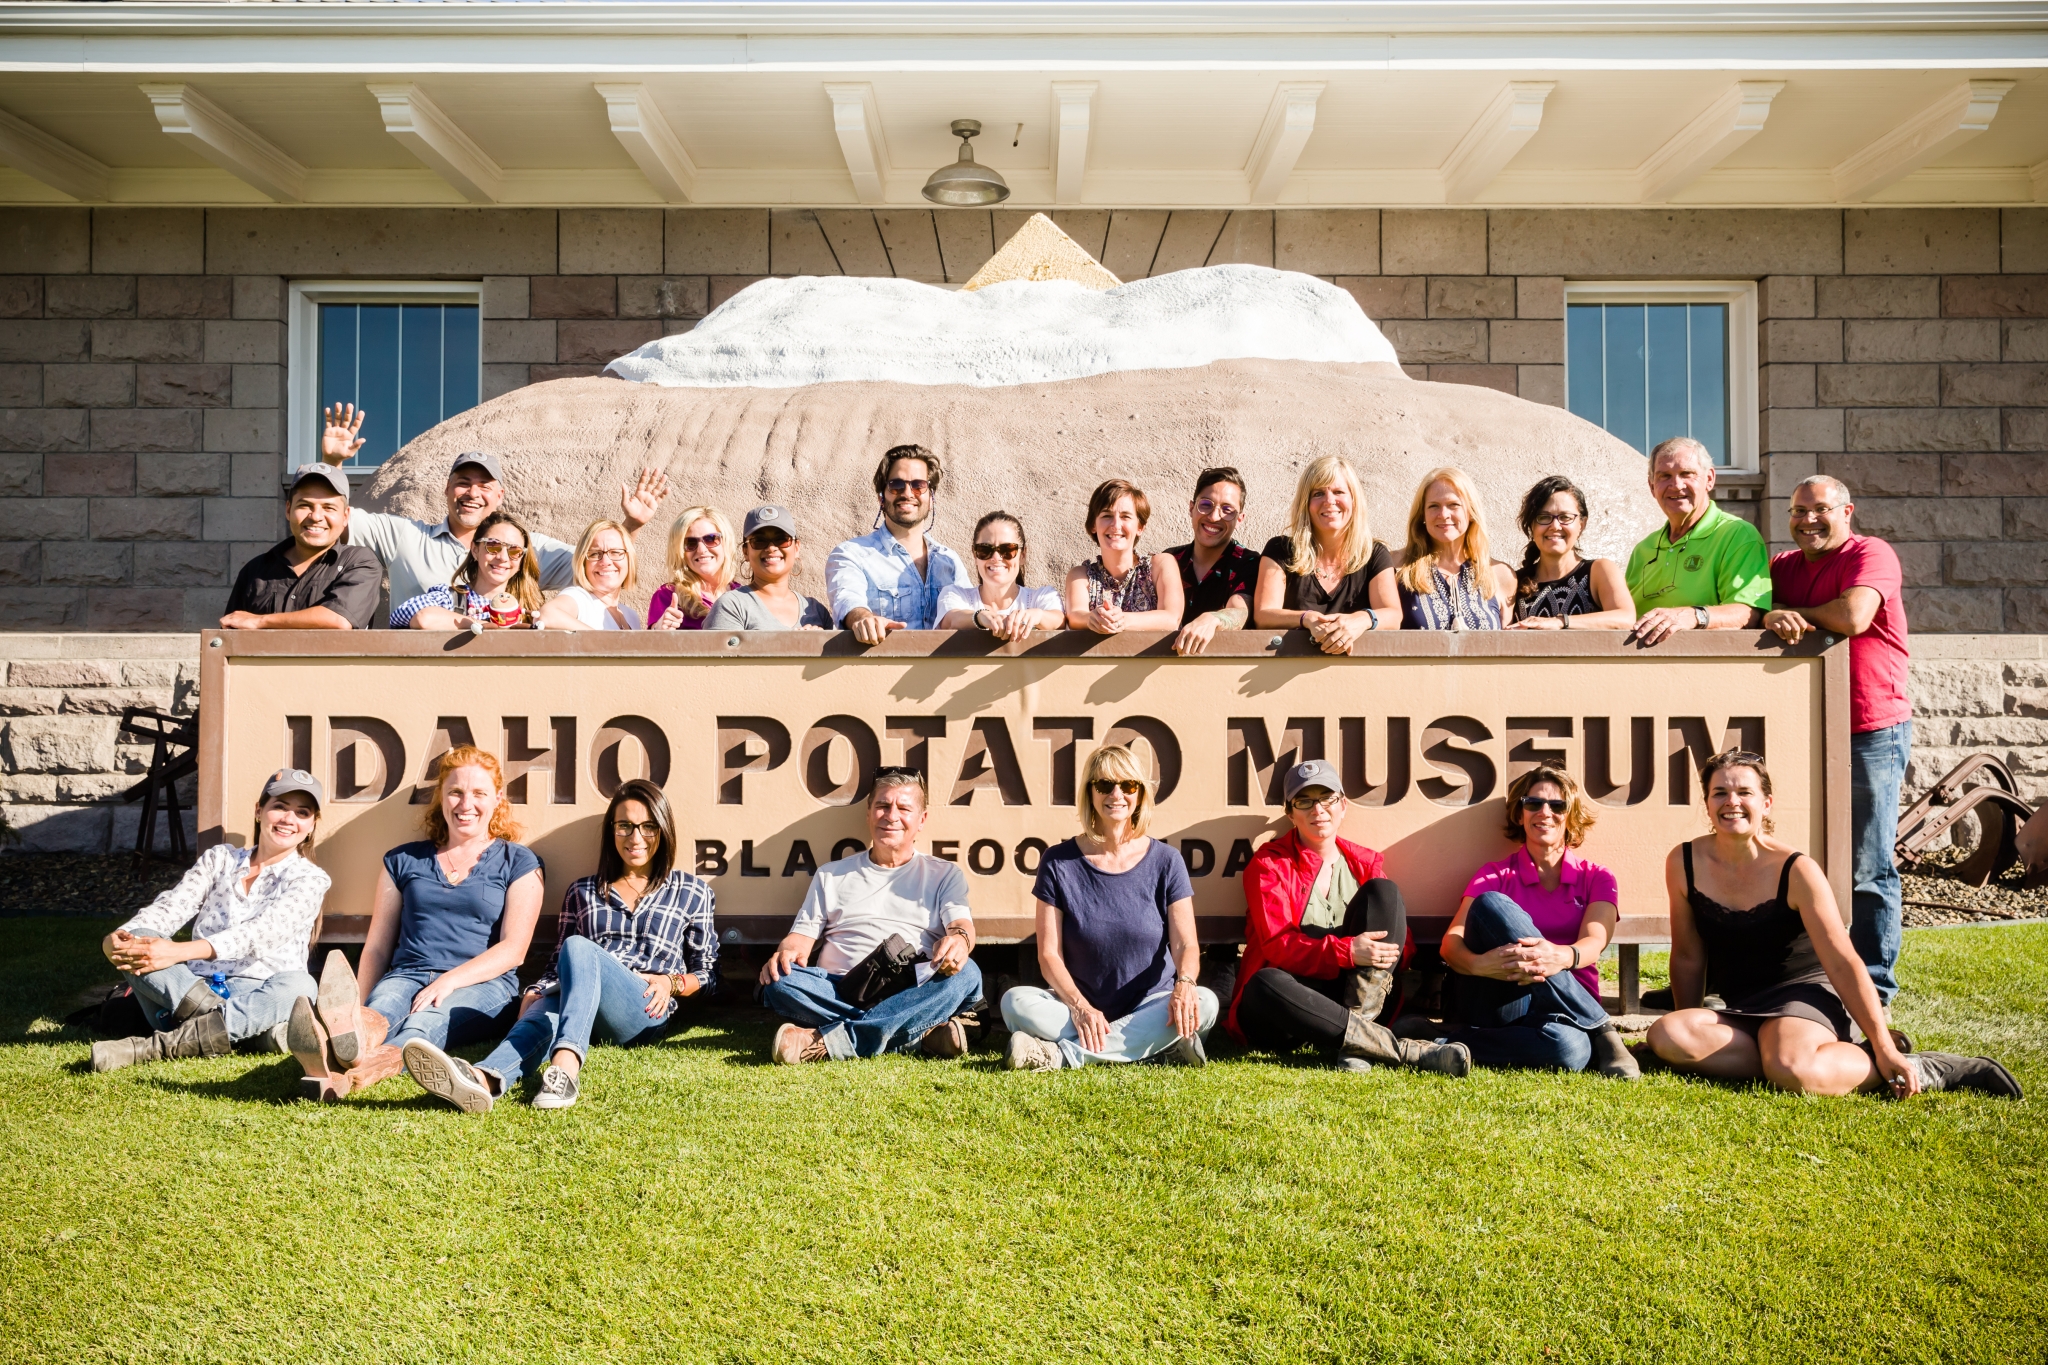 potato-museum-group-photo